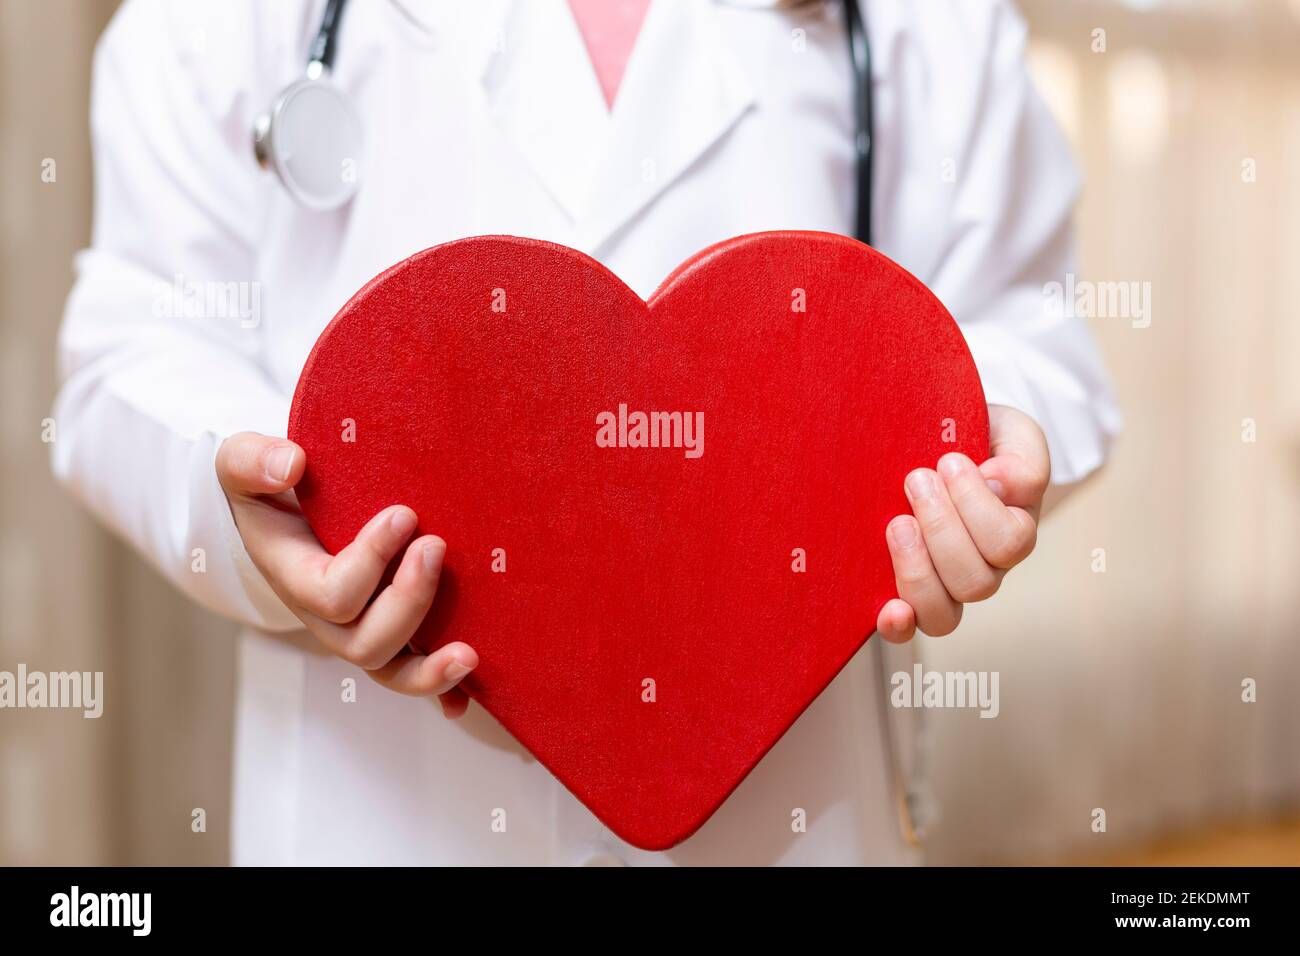 Cerca de una persona irreconocible en el vestido del doctor sosteniendo un gran corazón en sus manos. Concepto de salud y bienestar. Foto de stock